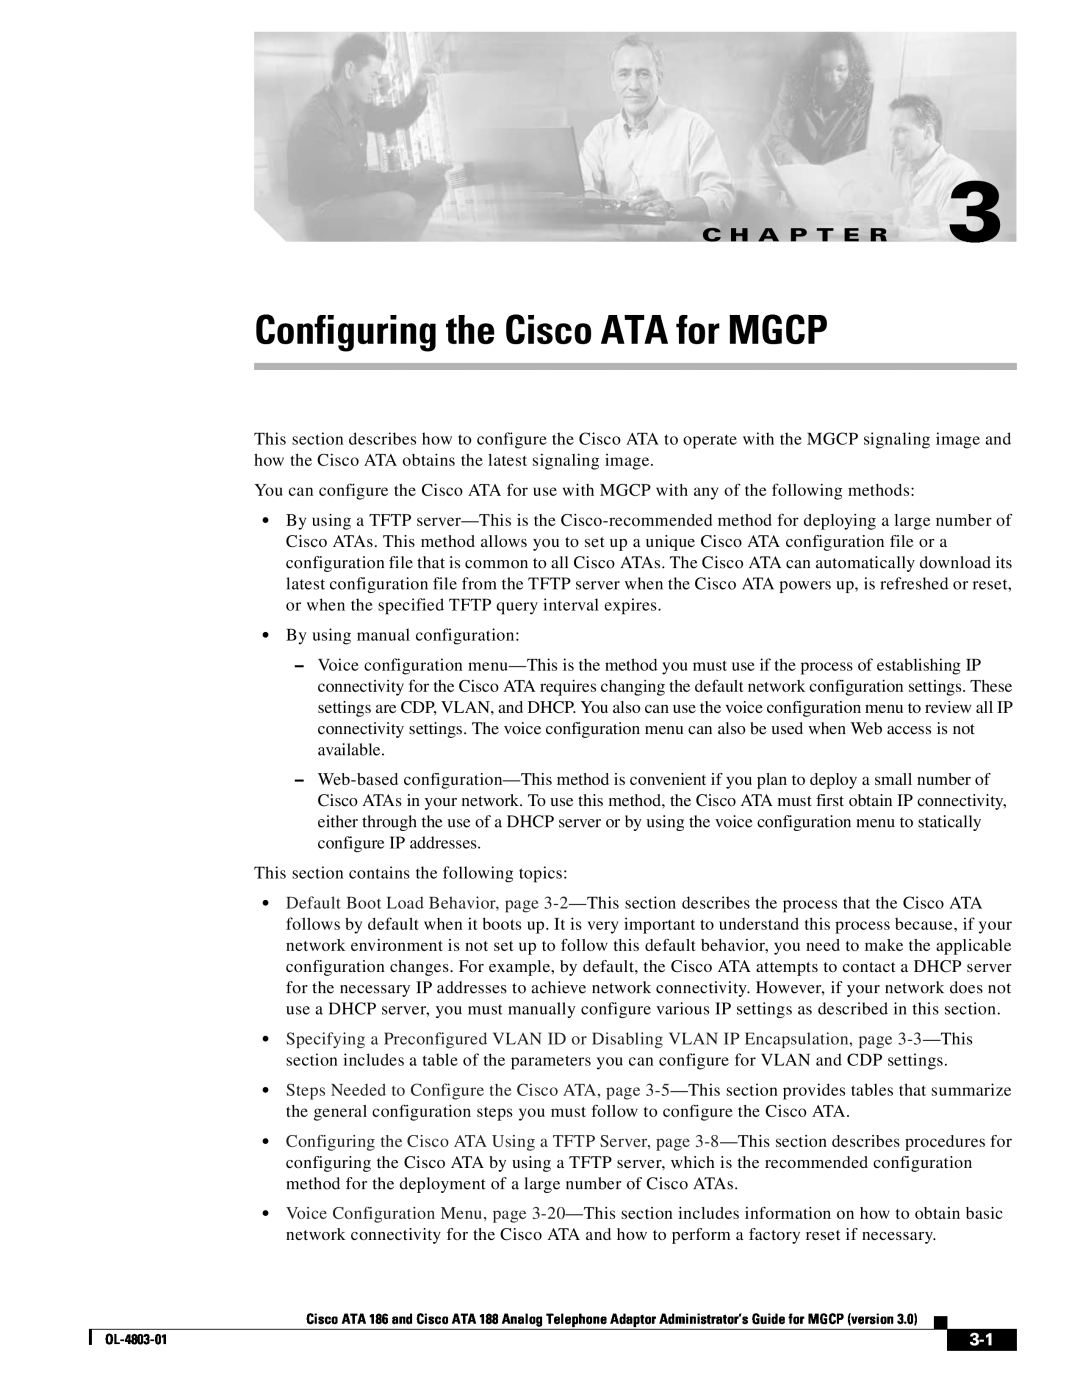 Cisco Systems ATA 186 manual Configuring the Cisco ATA for MGCP, C H A P T E R 